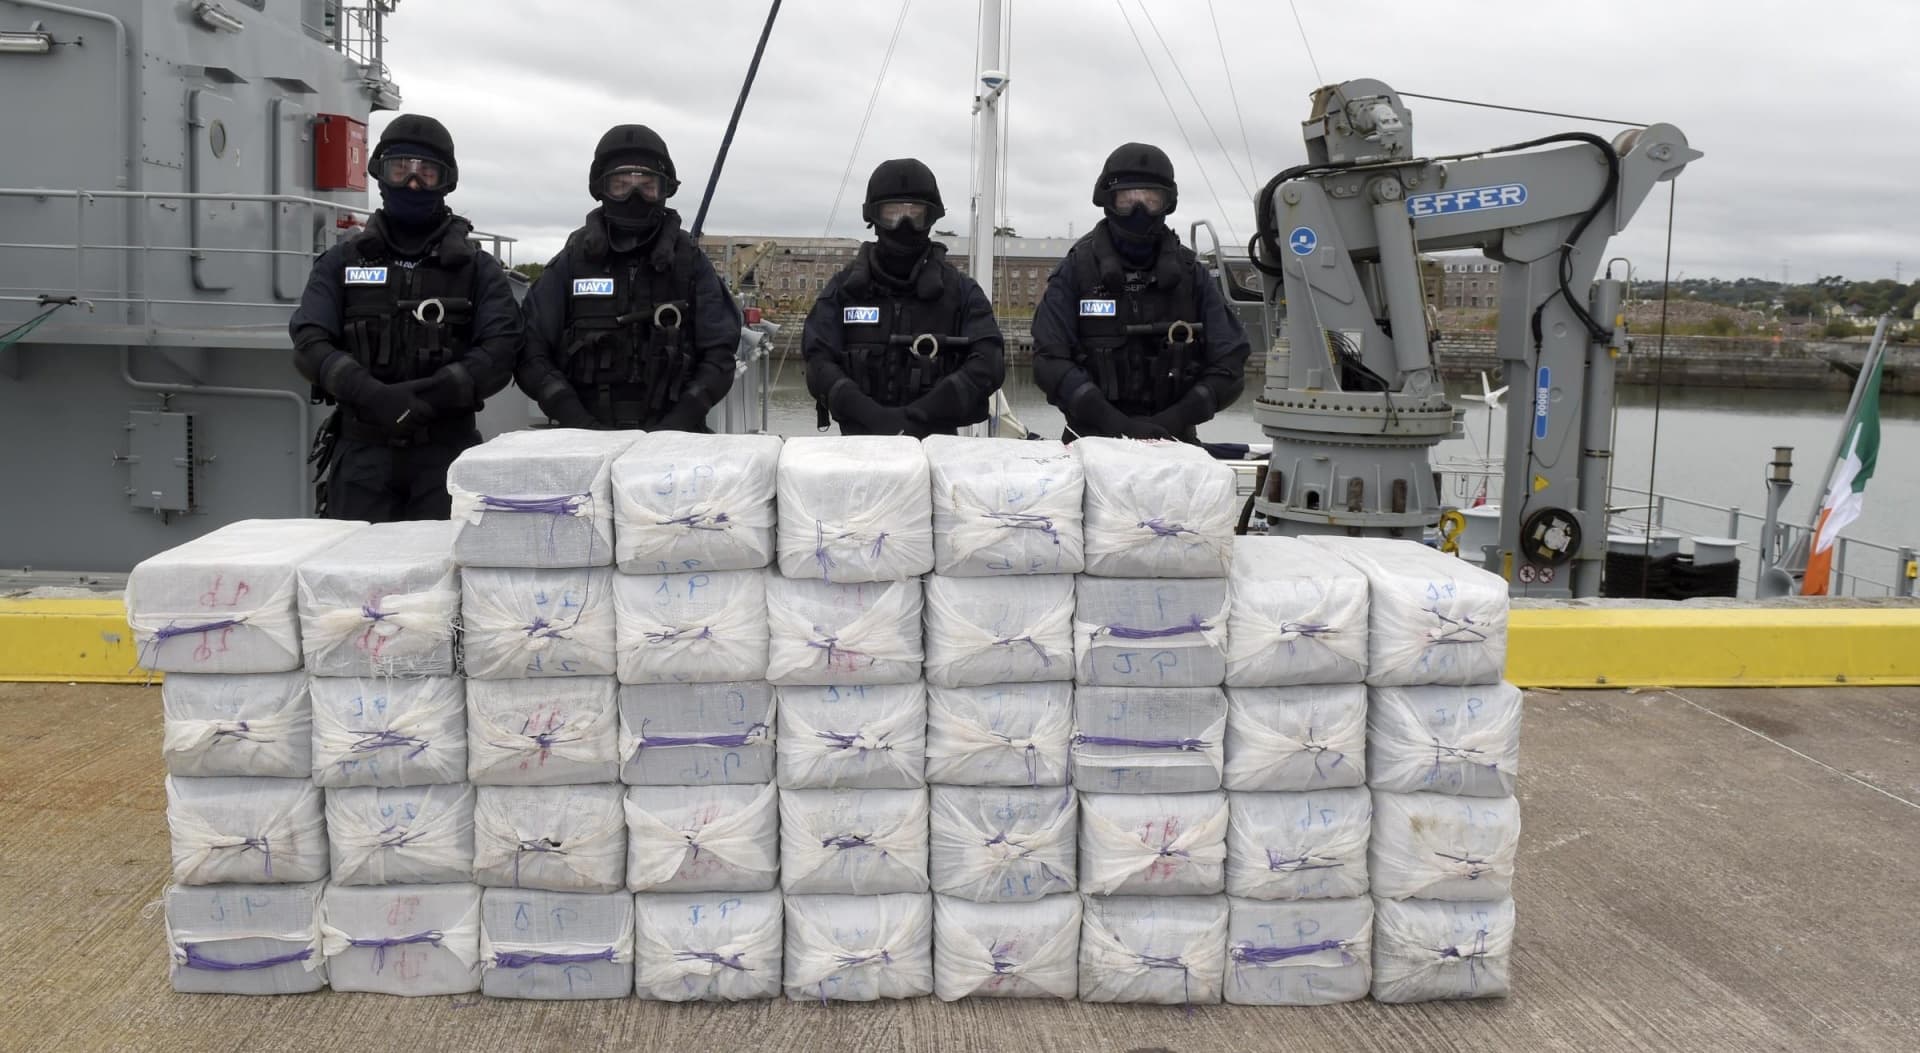 Mintegy 300 kilogramm kokaint foglaltak le Rotterdam kikötőjében